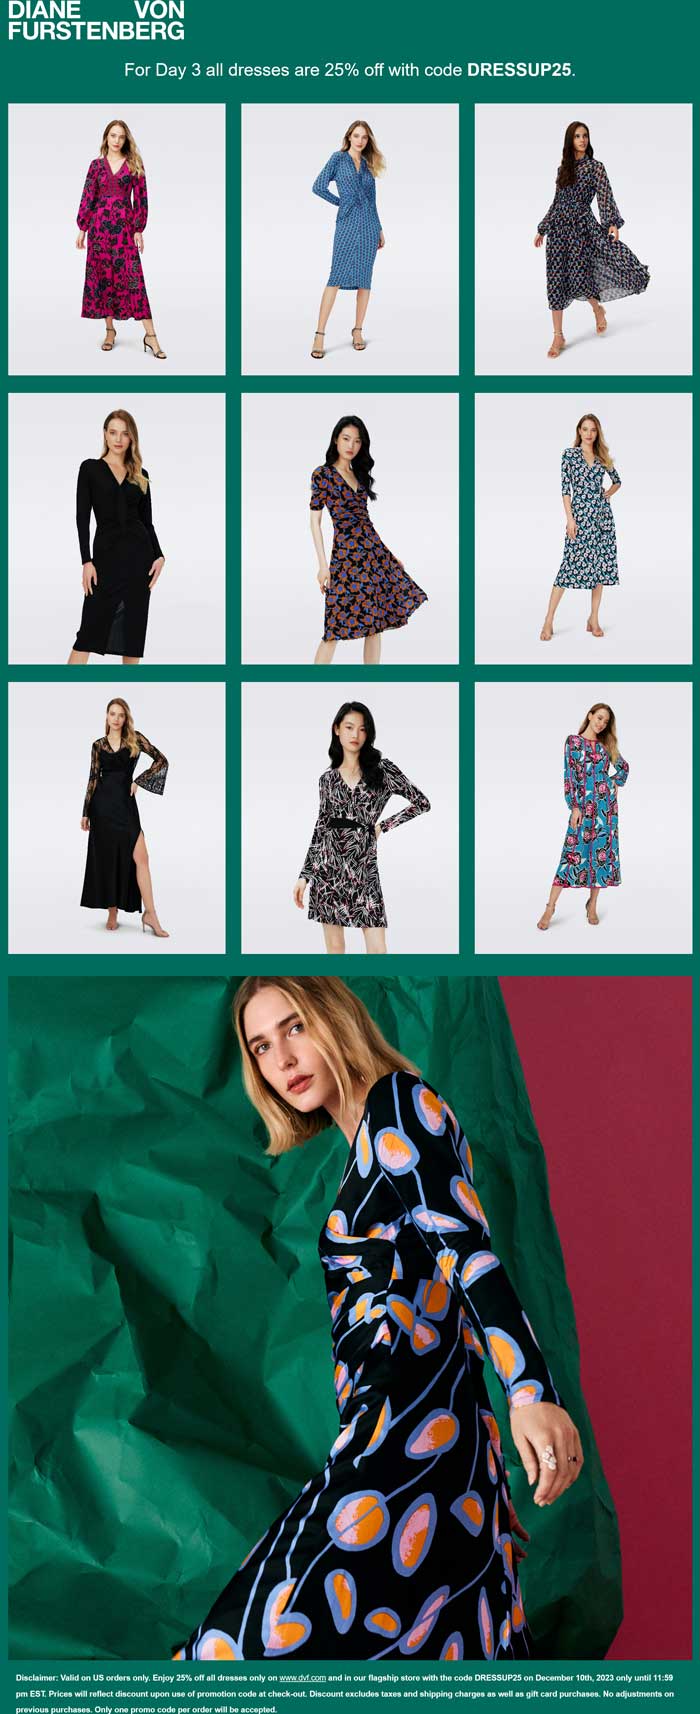 Diane von Furstenberg stores Coupon  25% off all dresses today at Diane von Furstenberg via promo code DRESSUP25 #dianevonfurstenberg 